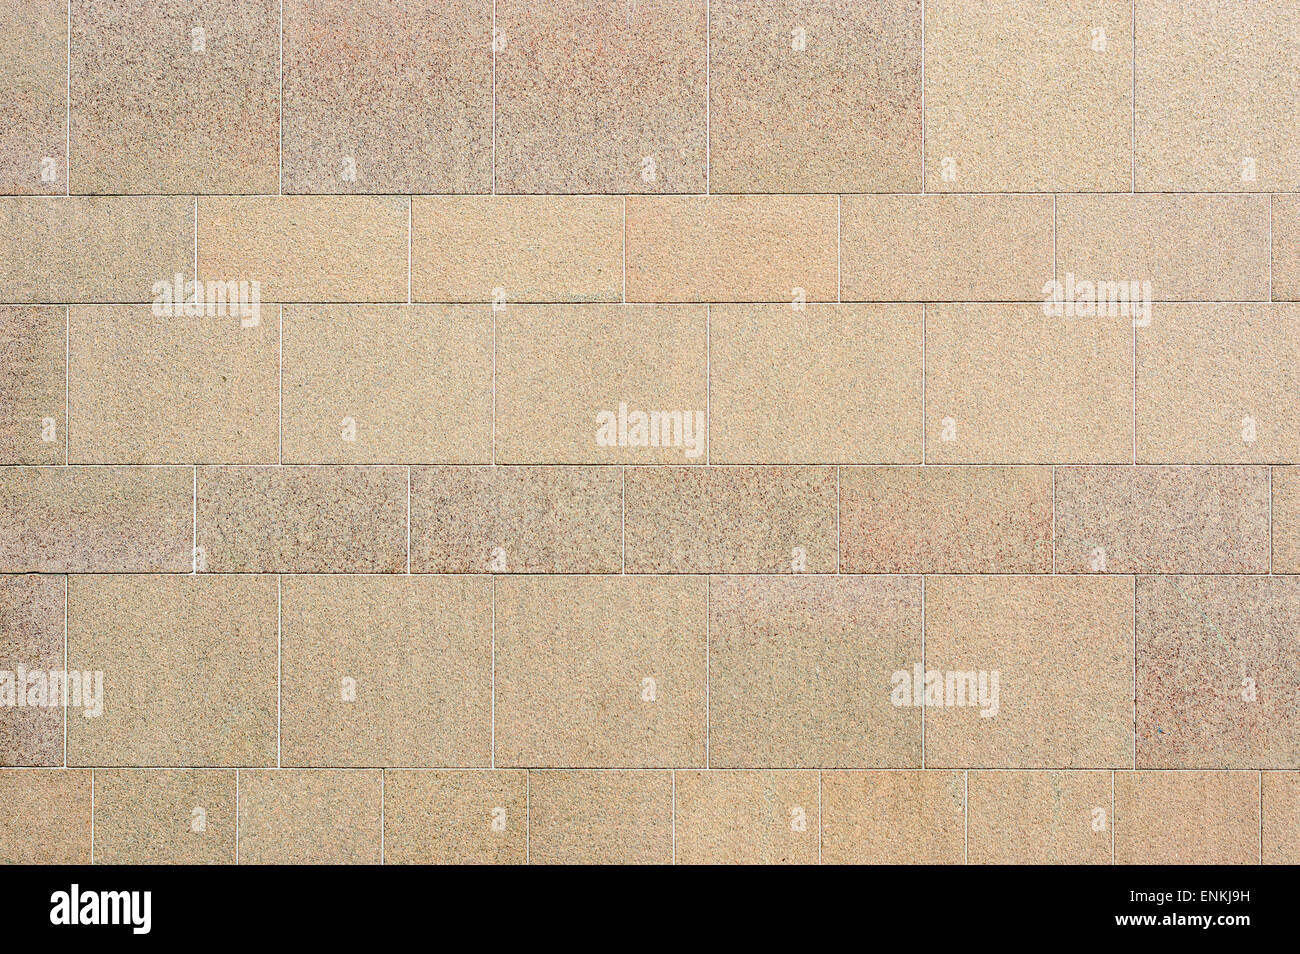 Muro de piedra fina de color beige grisáceo. Los bloques de piedra de distinto tamaño se utilizan para crear el patrón. Foto de stock